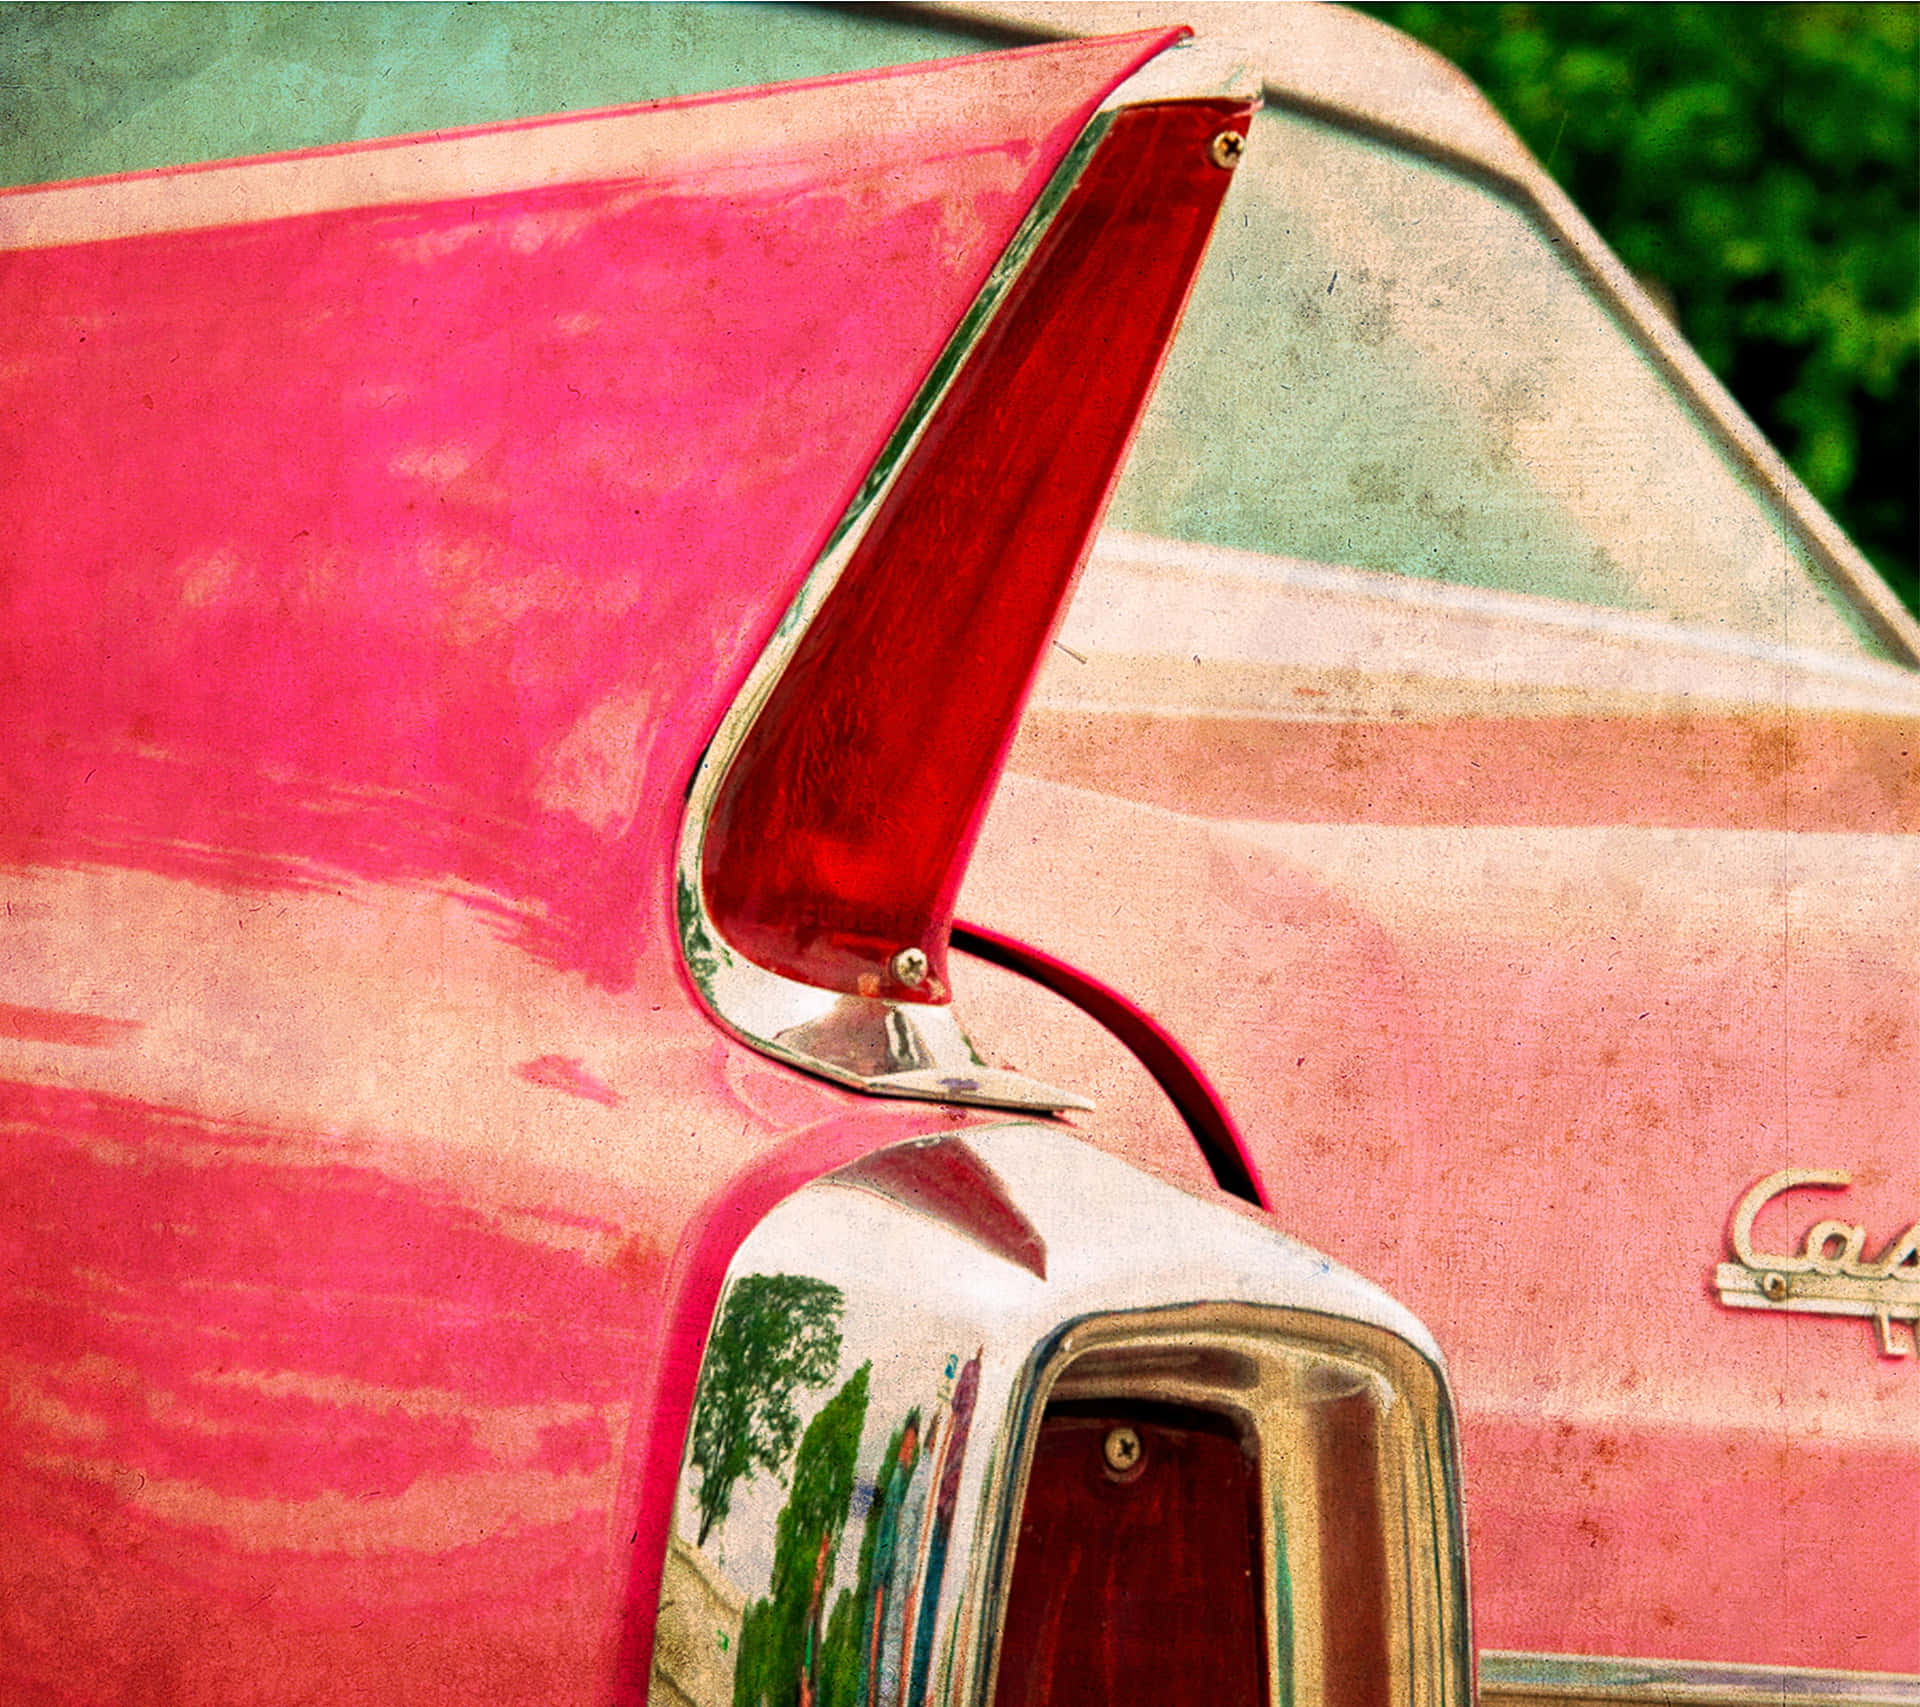 A Pink Vintage Car Set on a Sunlit Road Wallpaper